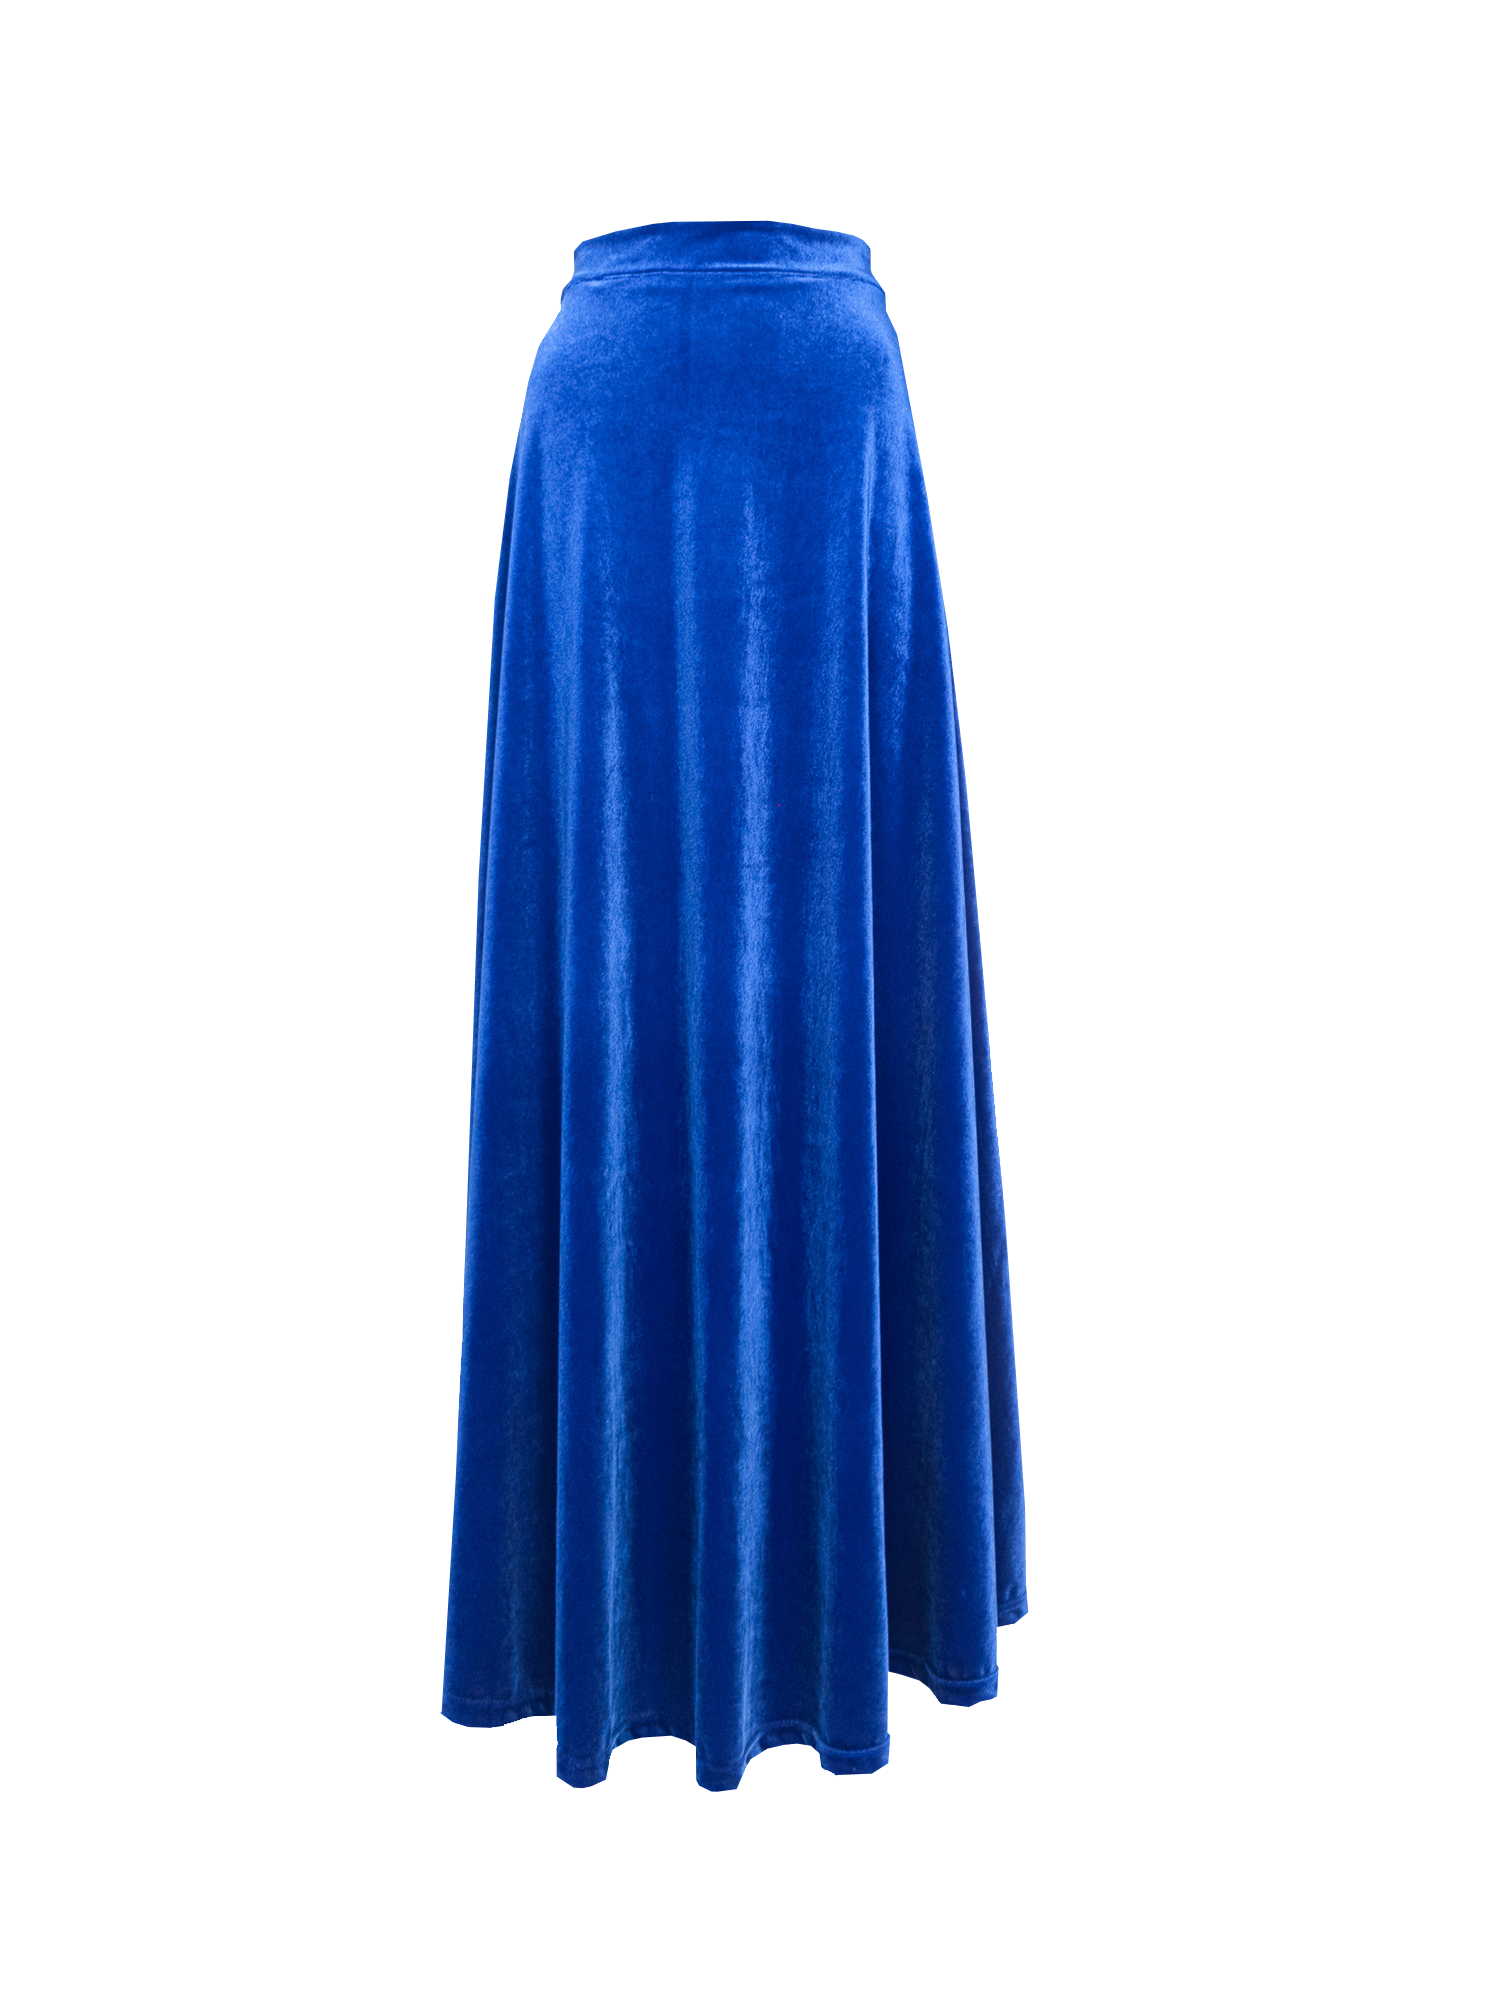 TOSCA - long skirt in bluette chenille